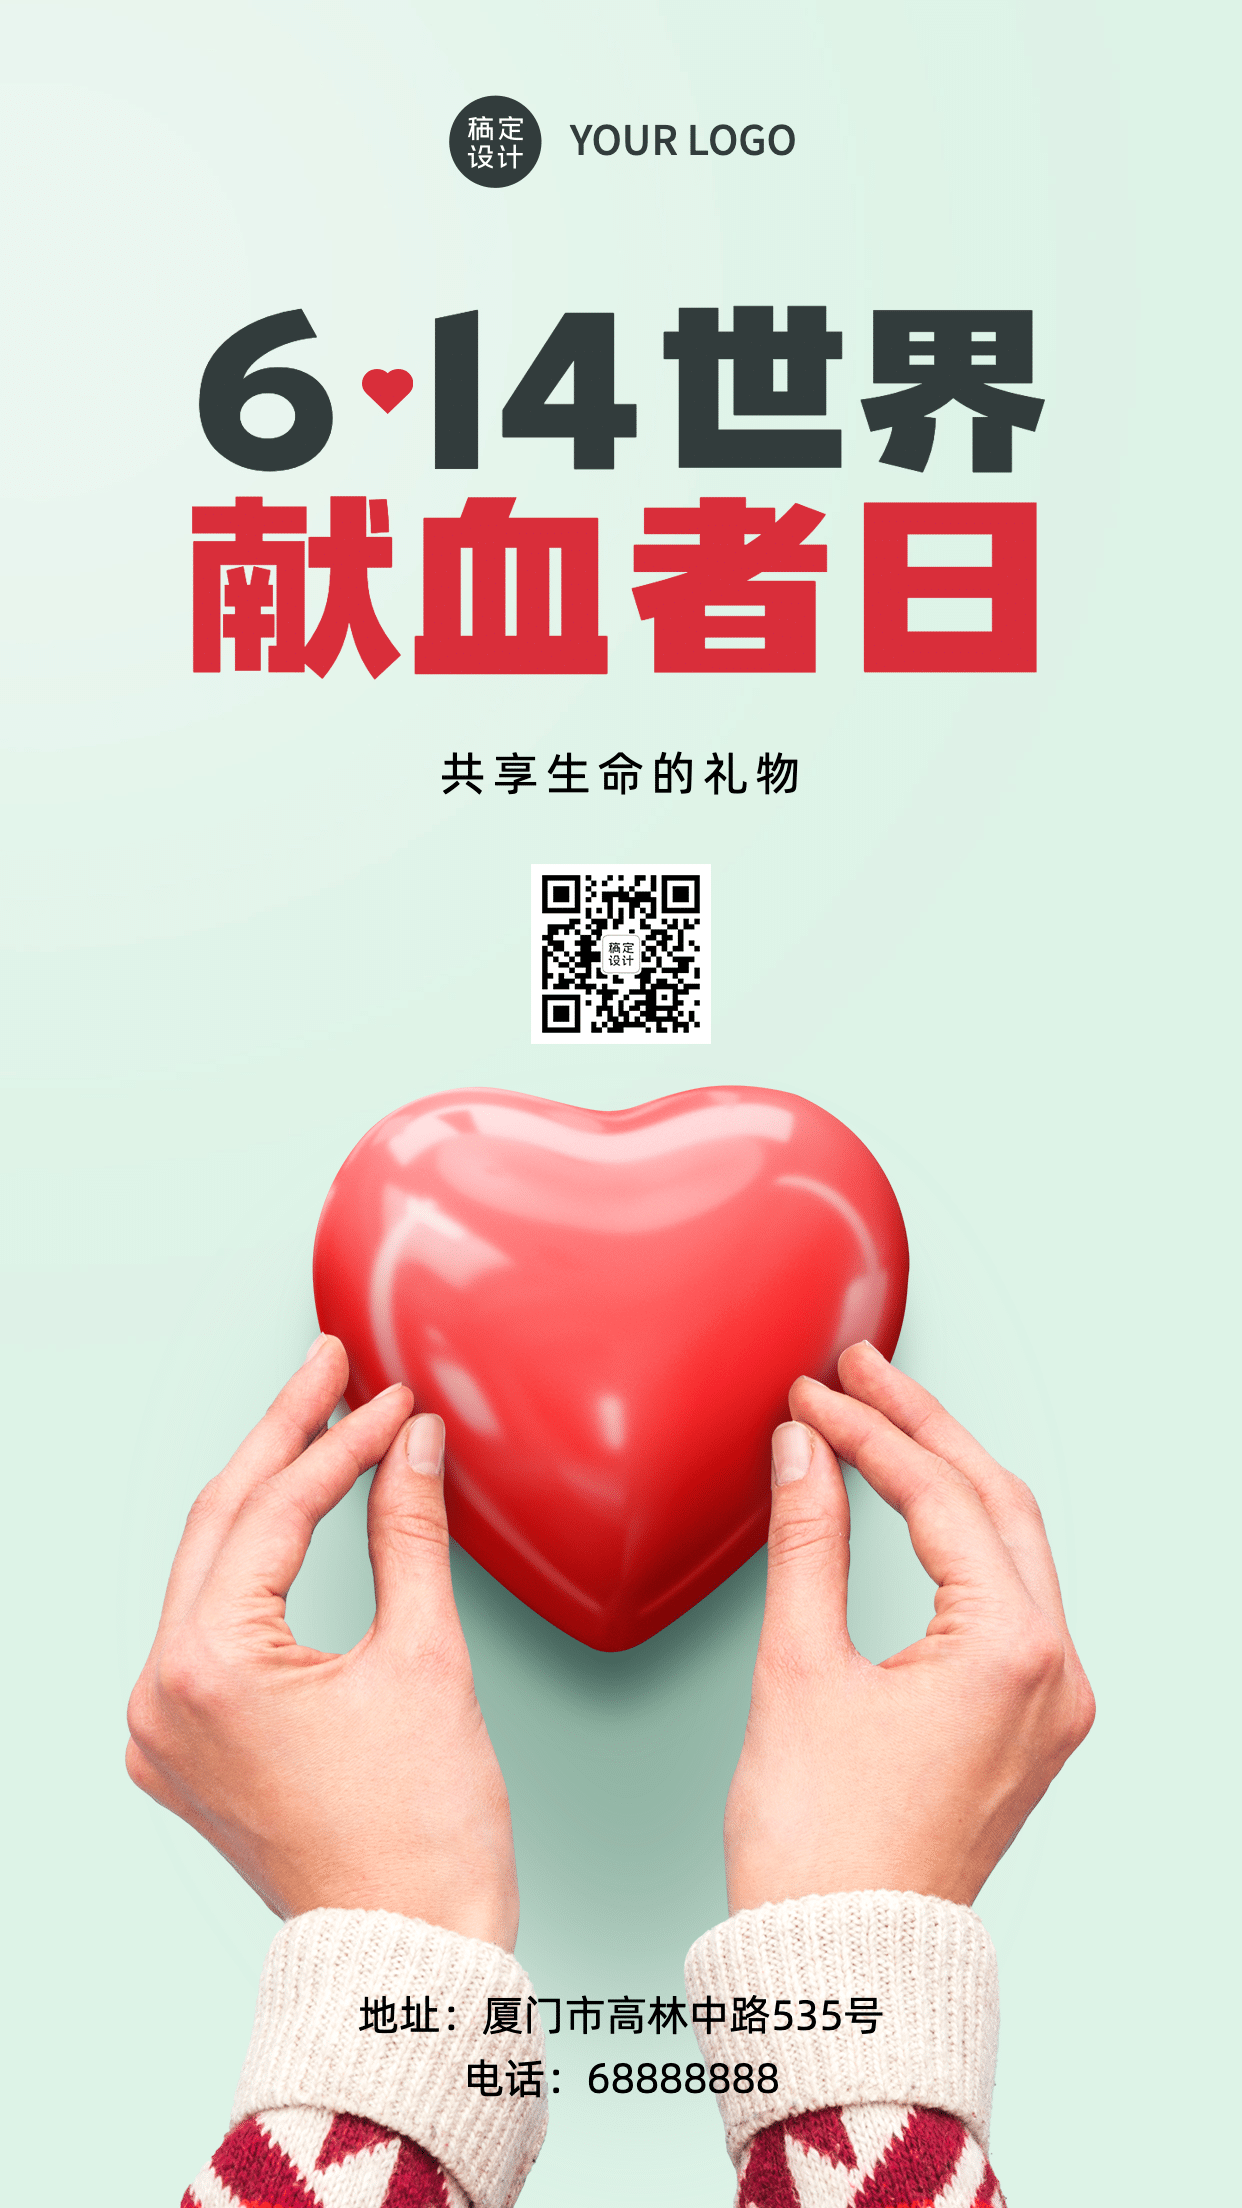 世界献血日公益爱心医疗手机海报预览效果